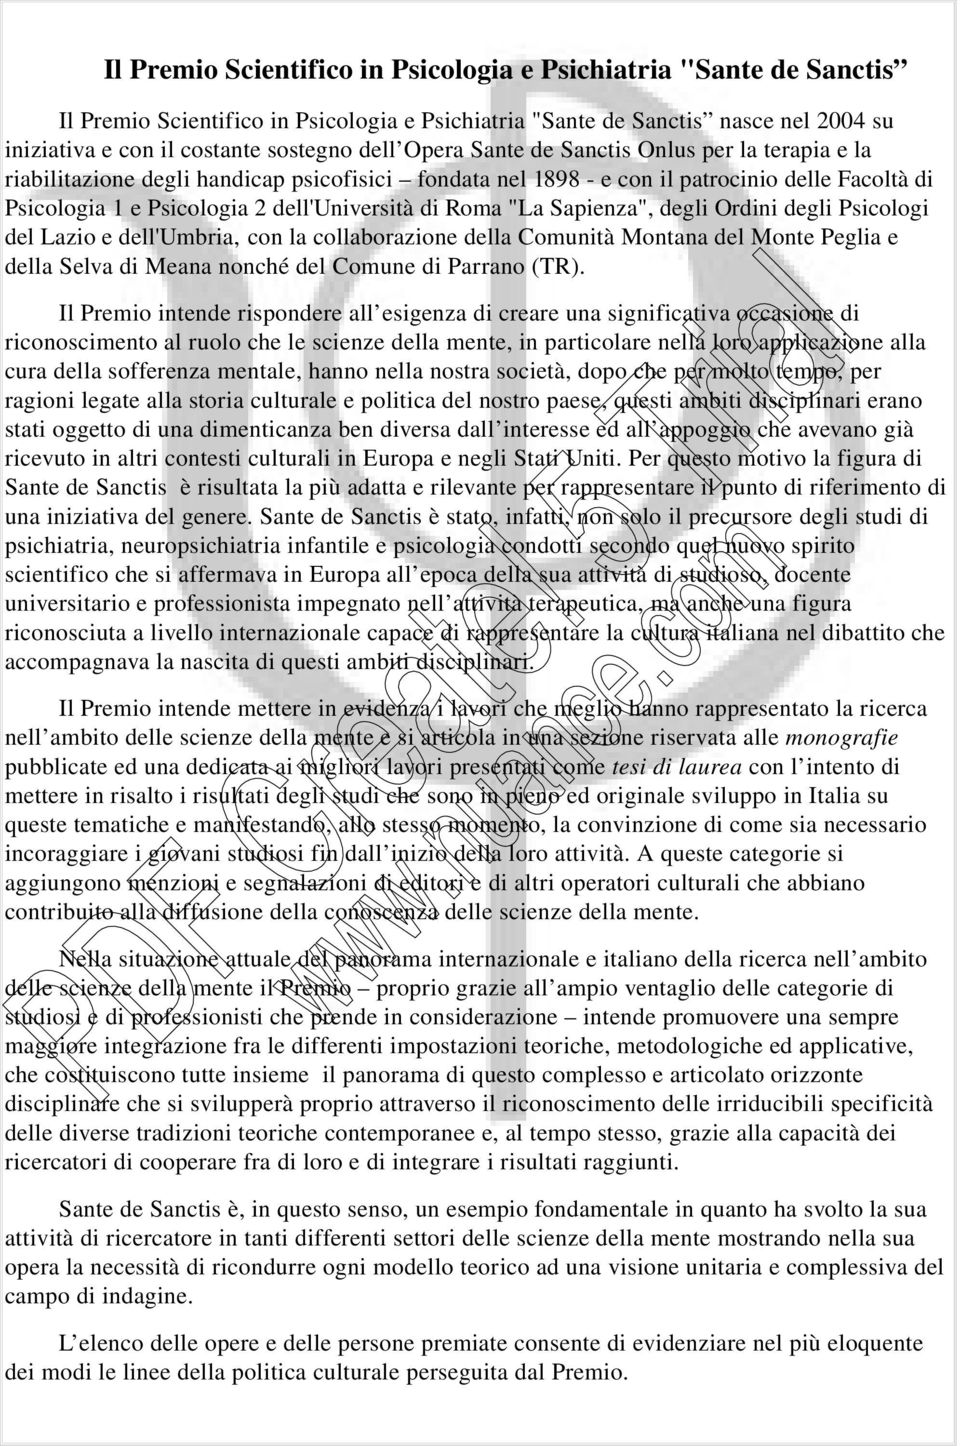 "La Sapienza", degli Ordini degli Psicologi del Lazio e dell'umbria, con la collaborazione della Comunità Montana del Monte Peglia e della Selva di Meana nonché del Comune di Parrano (TR).